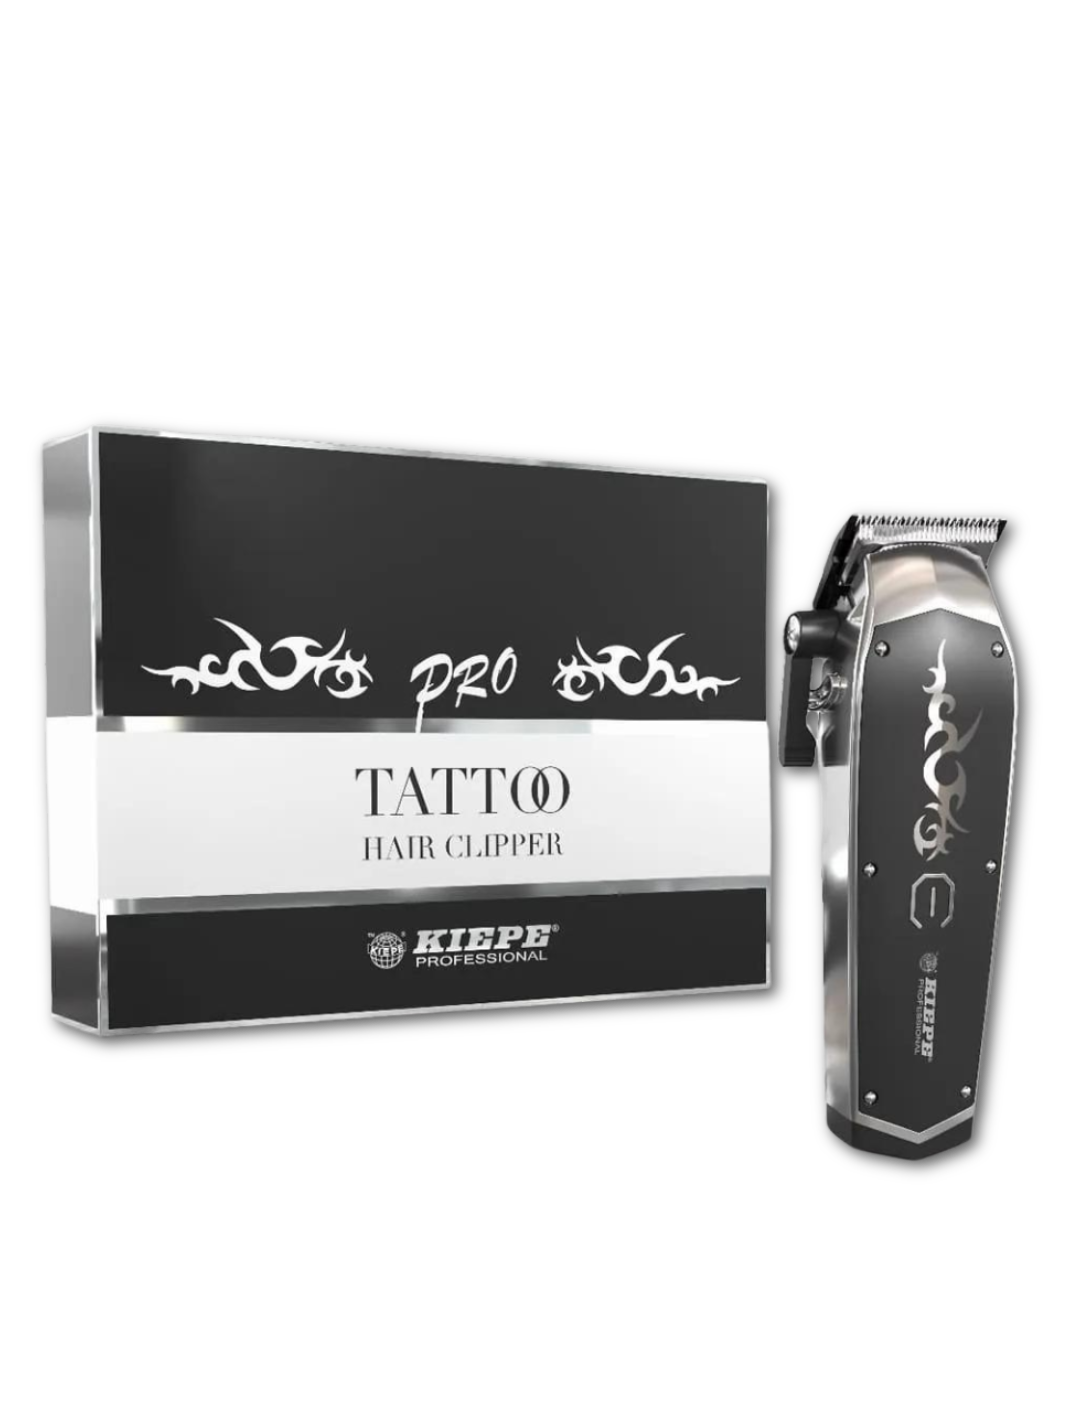  Der Kiepe Clipper Tattoo Pro schnurlos präsentiert neben seiner eleganten Verpackung, verfügbar bei Phullcutz, perfekt für präzises Haarstyling